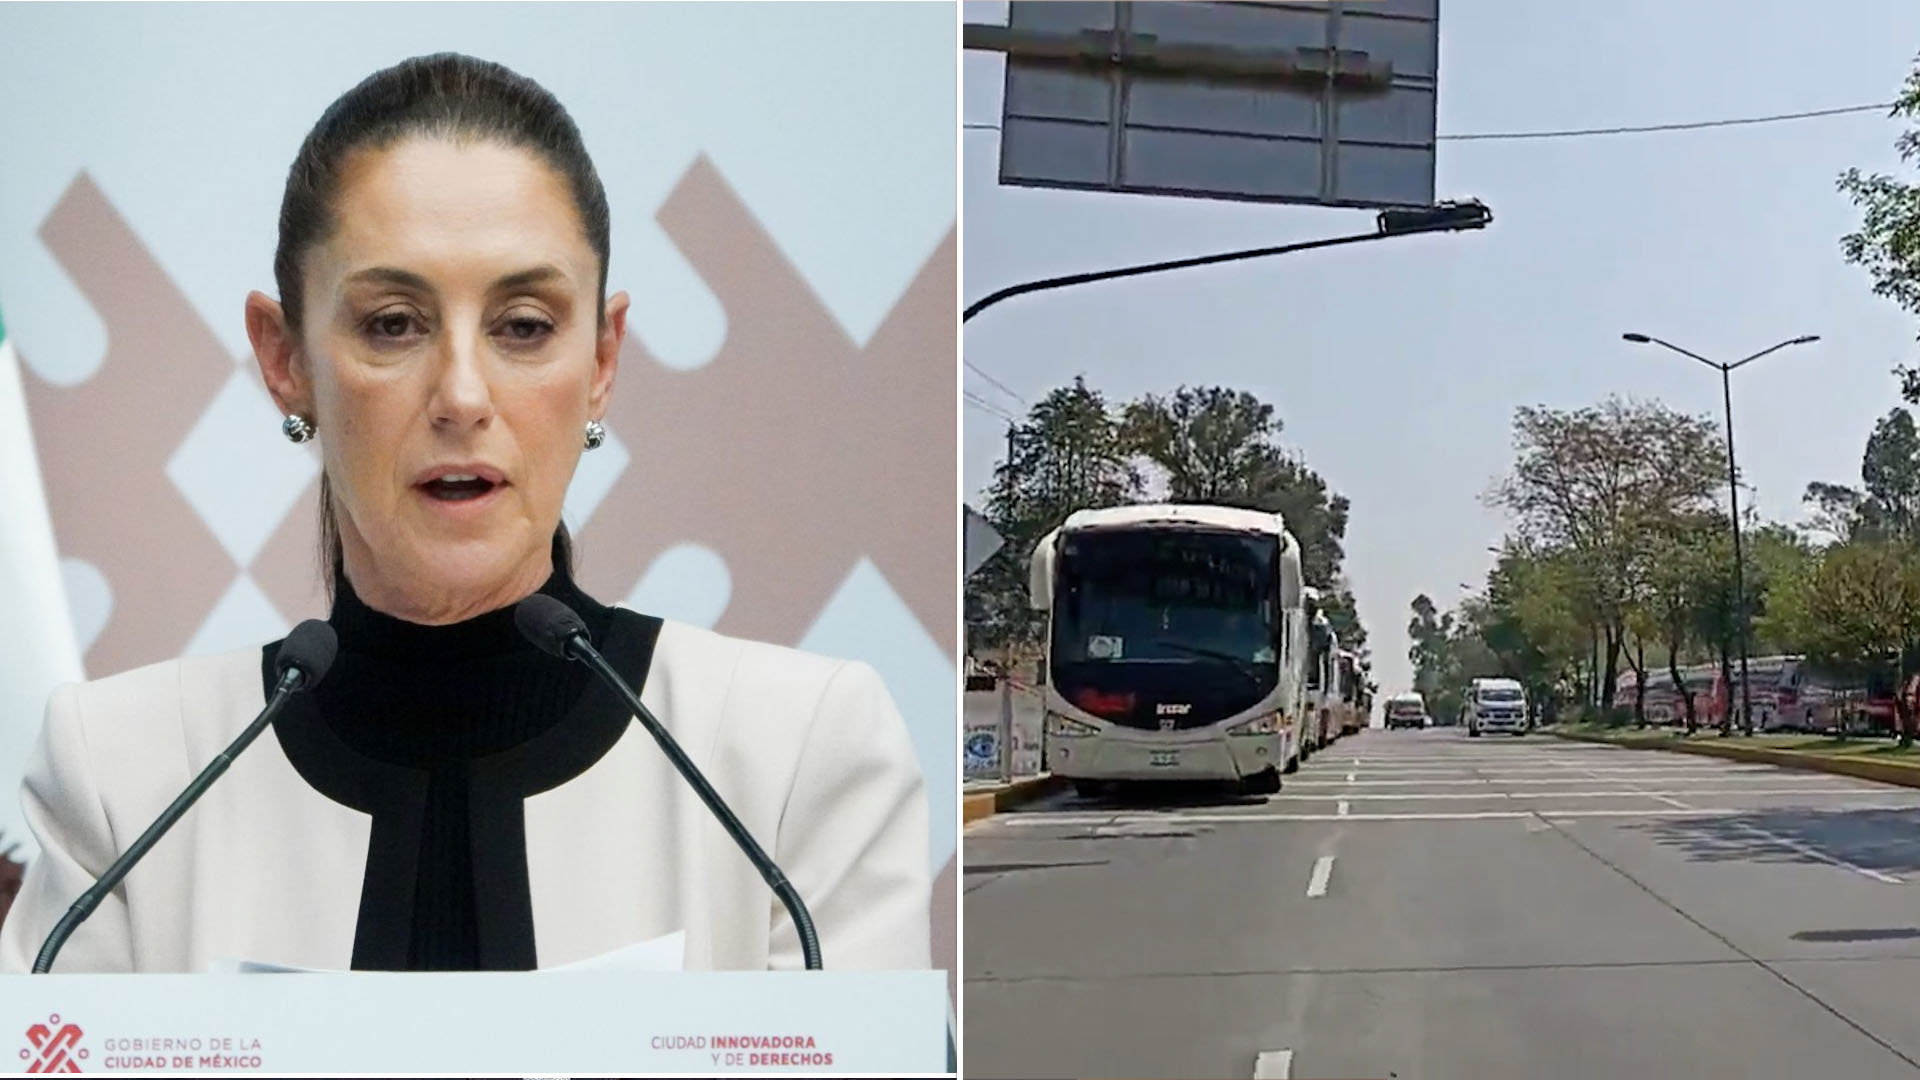 Visita de Sheinbaum a Puebla desató caos vial por camiones con “acarreados”, denunciaron en redes